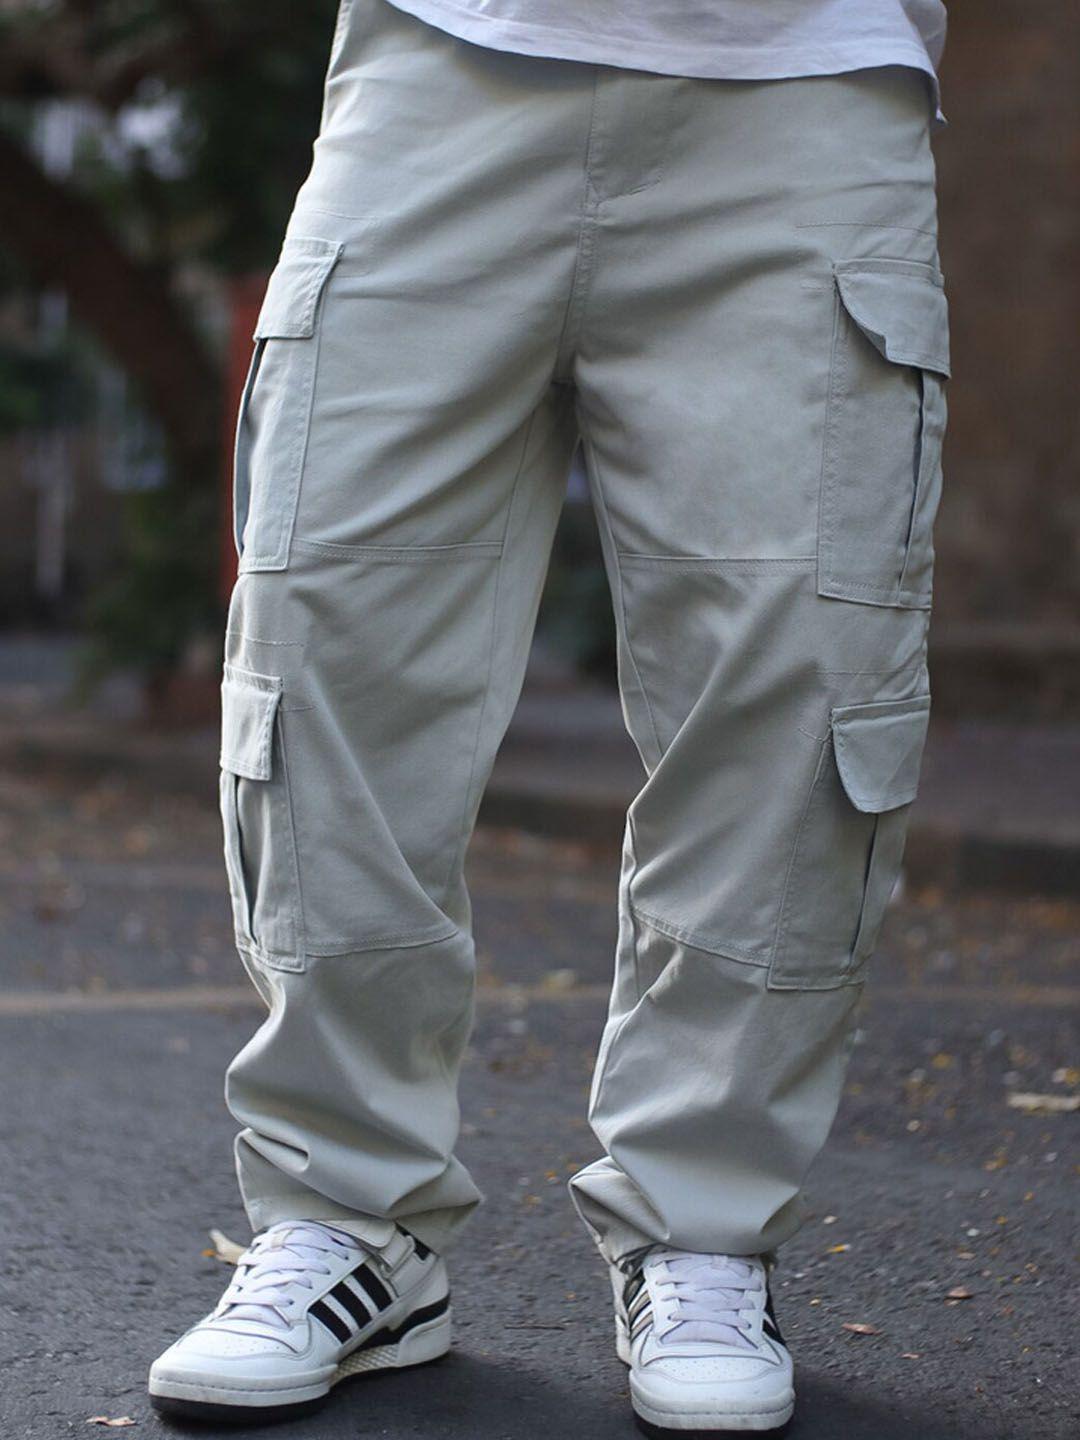 powerlook men grey loose fit chinos trousers